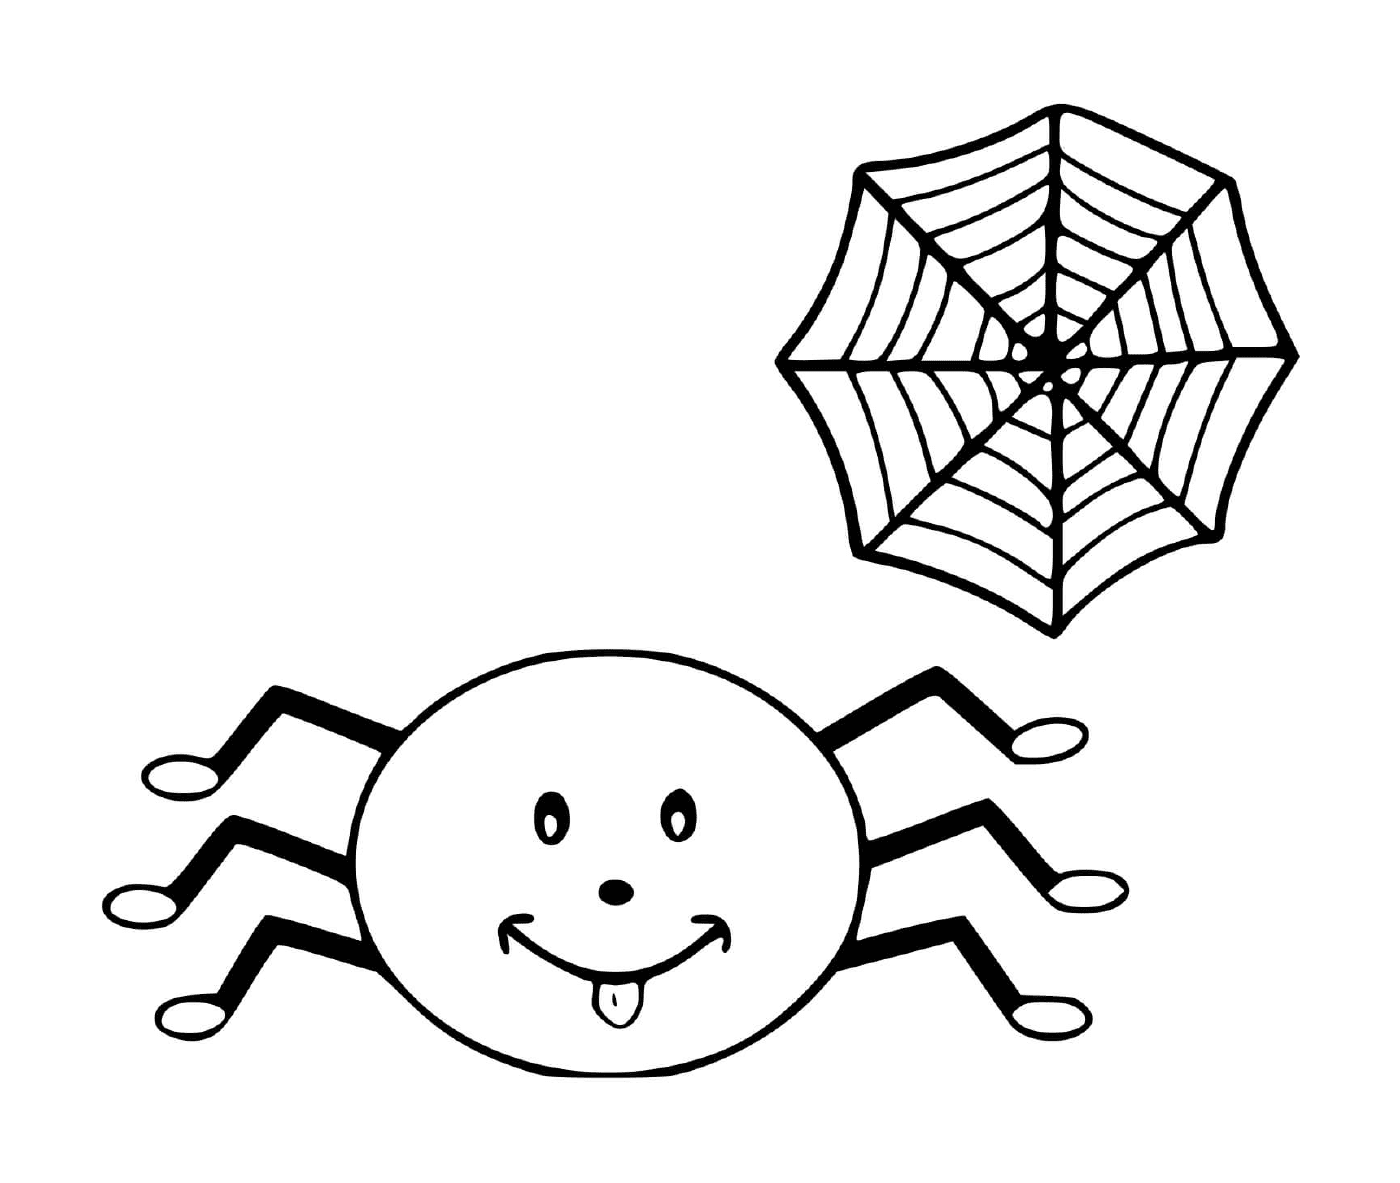  Eine Spinne und ein Netz 